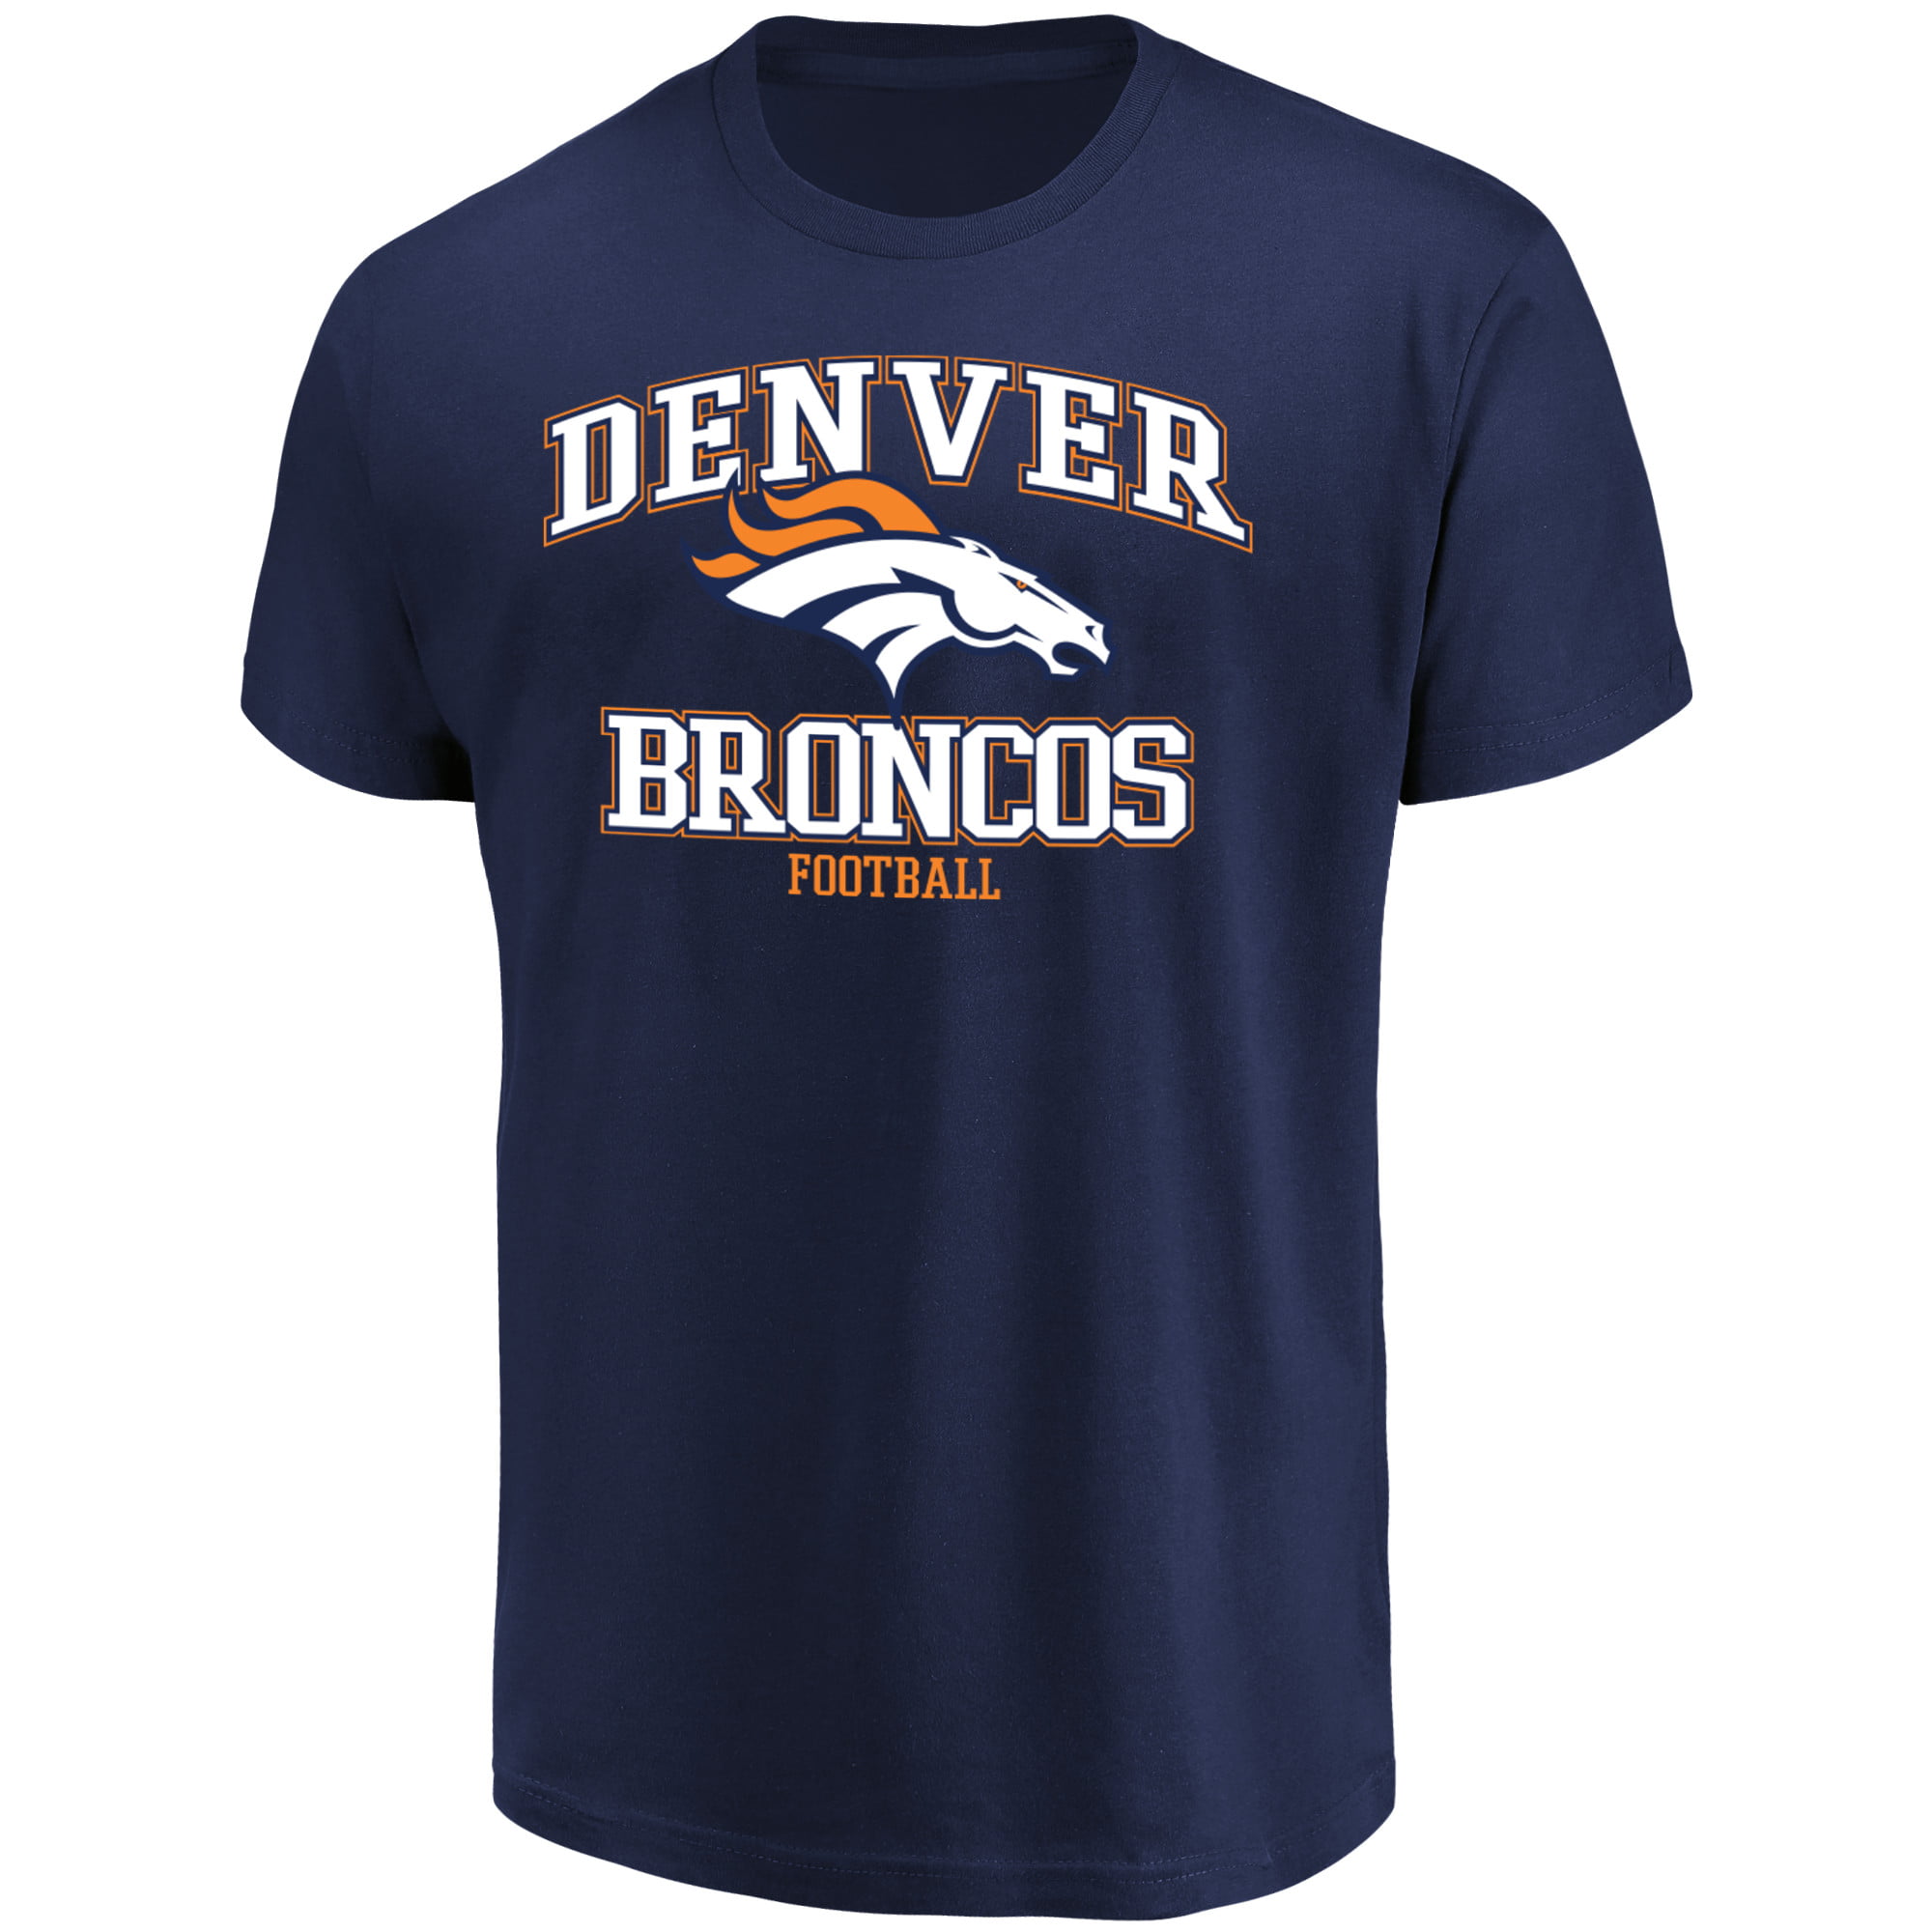 Denver Broncos T-Shirts - Walmart.com